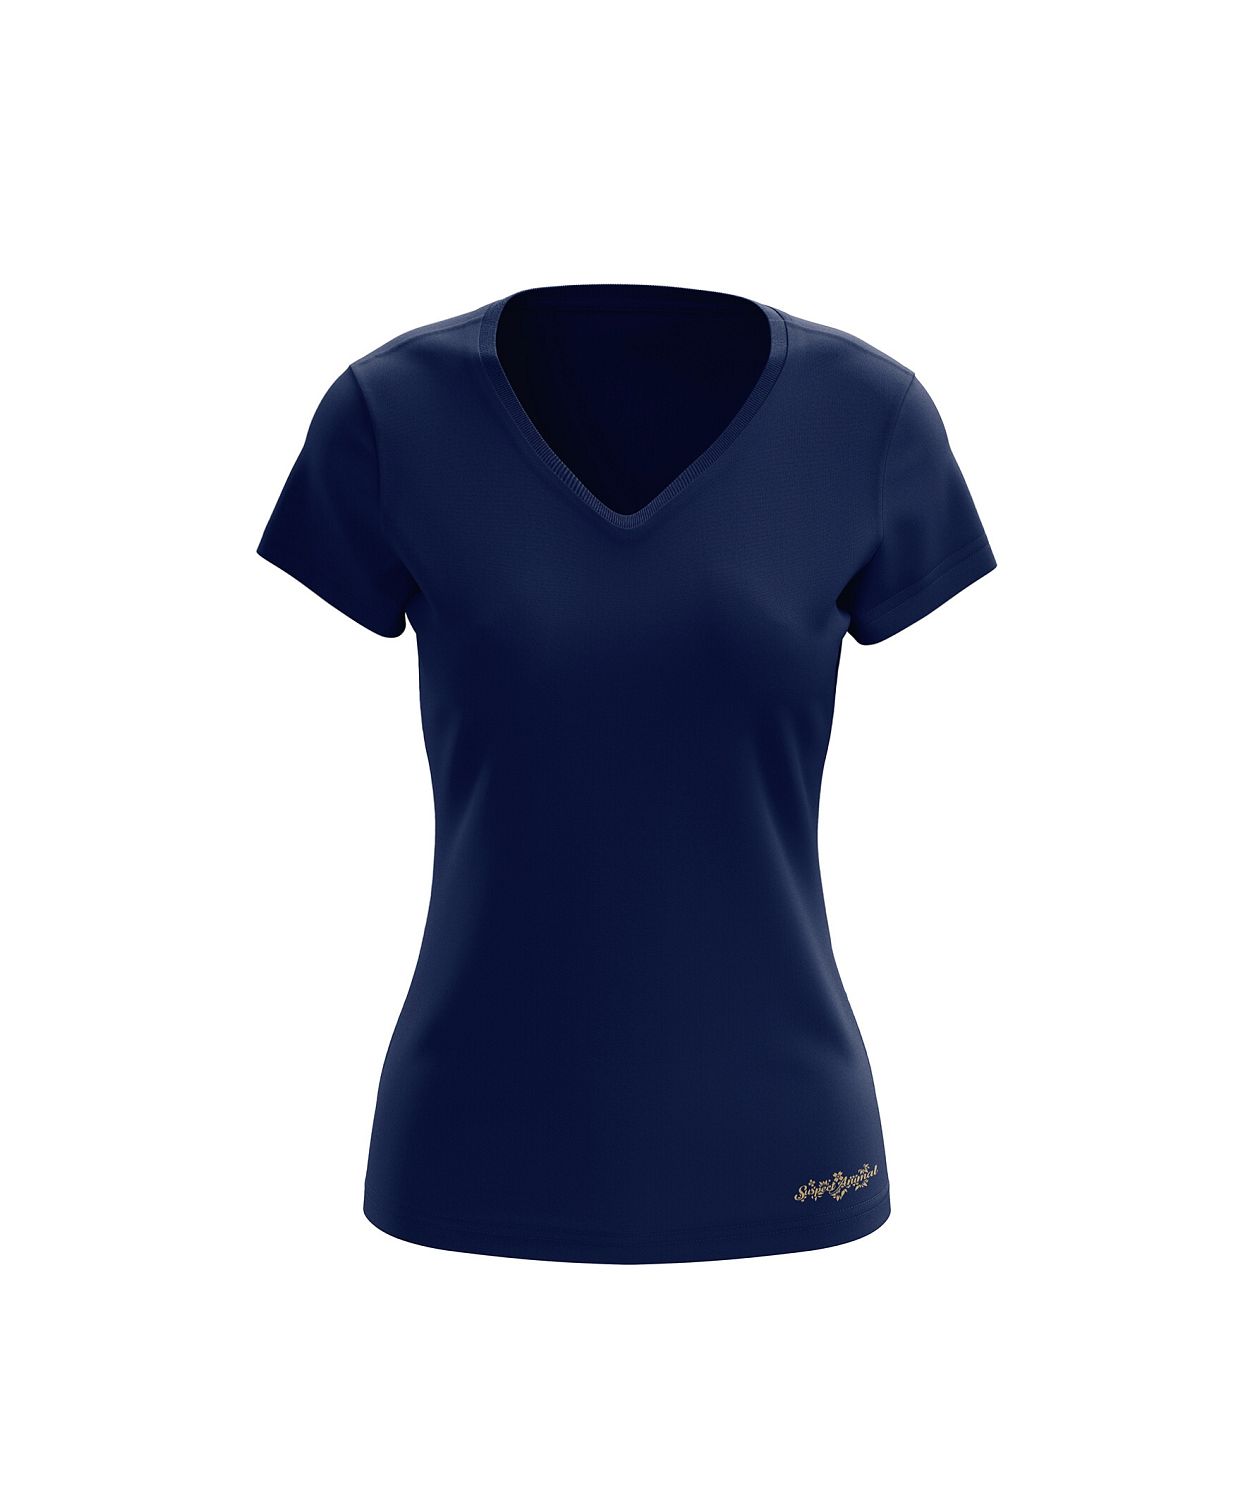 Dámské funkční tričko SPORTY "V" krátký rukáv tmavá modrá Bamboo Ultra CLASSIC